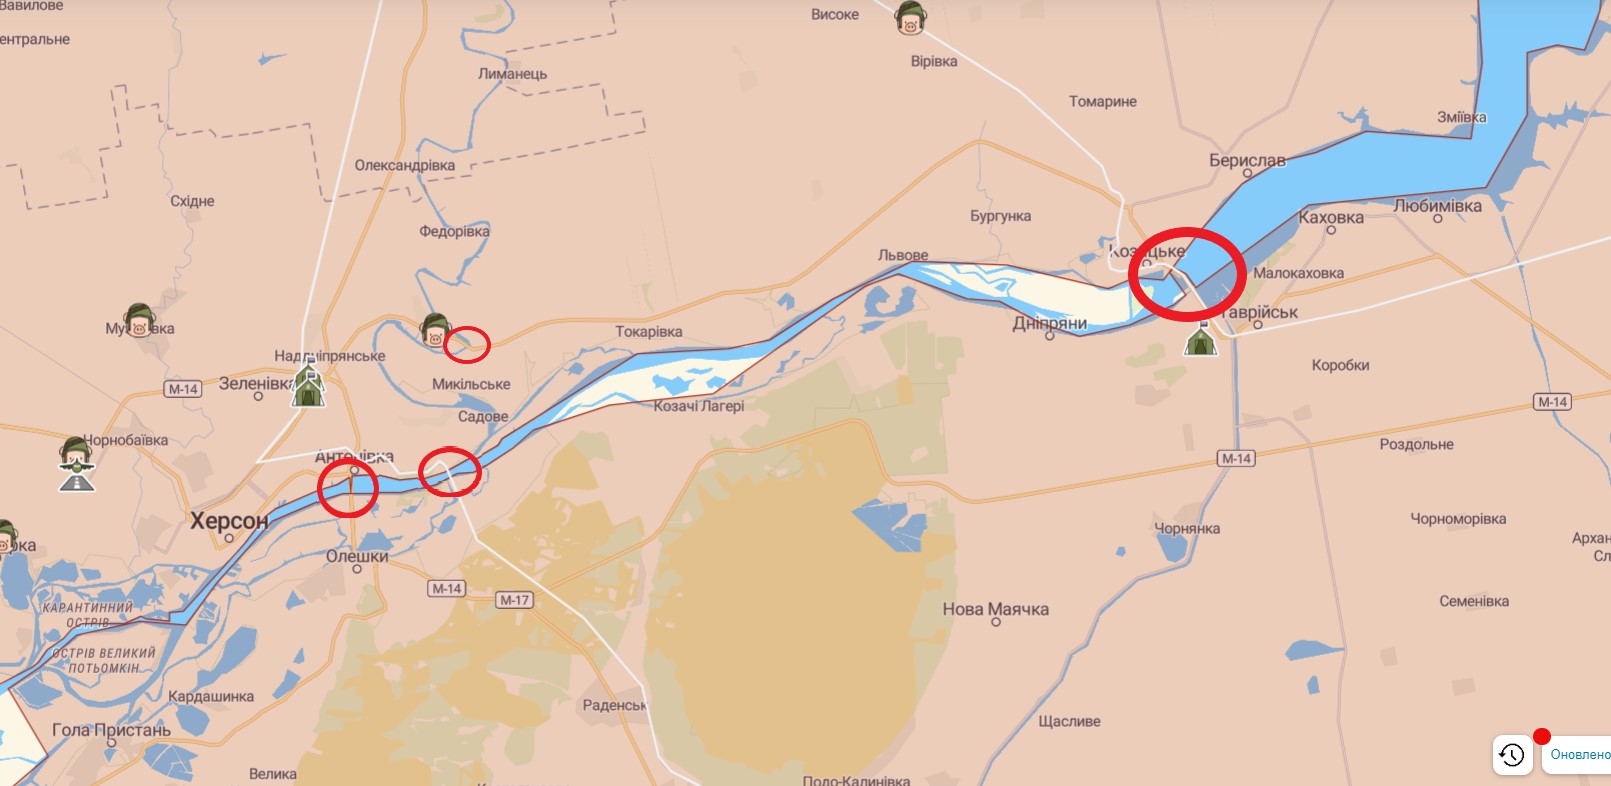 ВСУ ударили по мосту в районе Каховской ГЭС. Теперь армия России не может его использовать